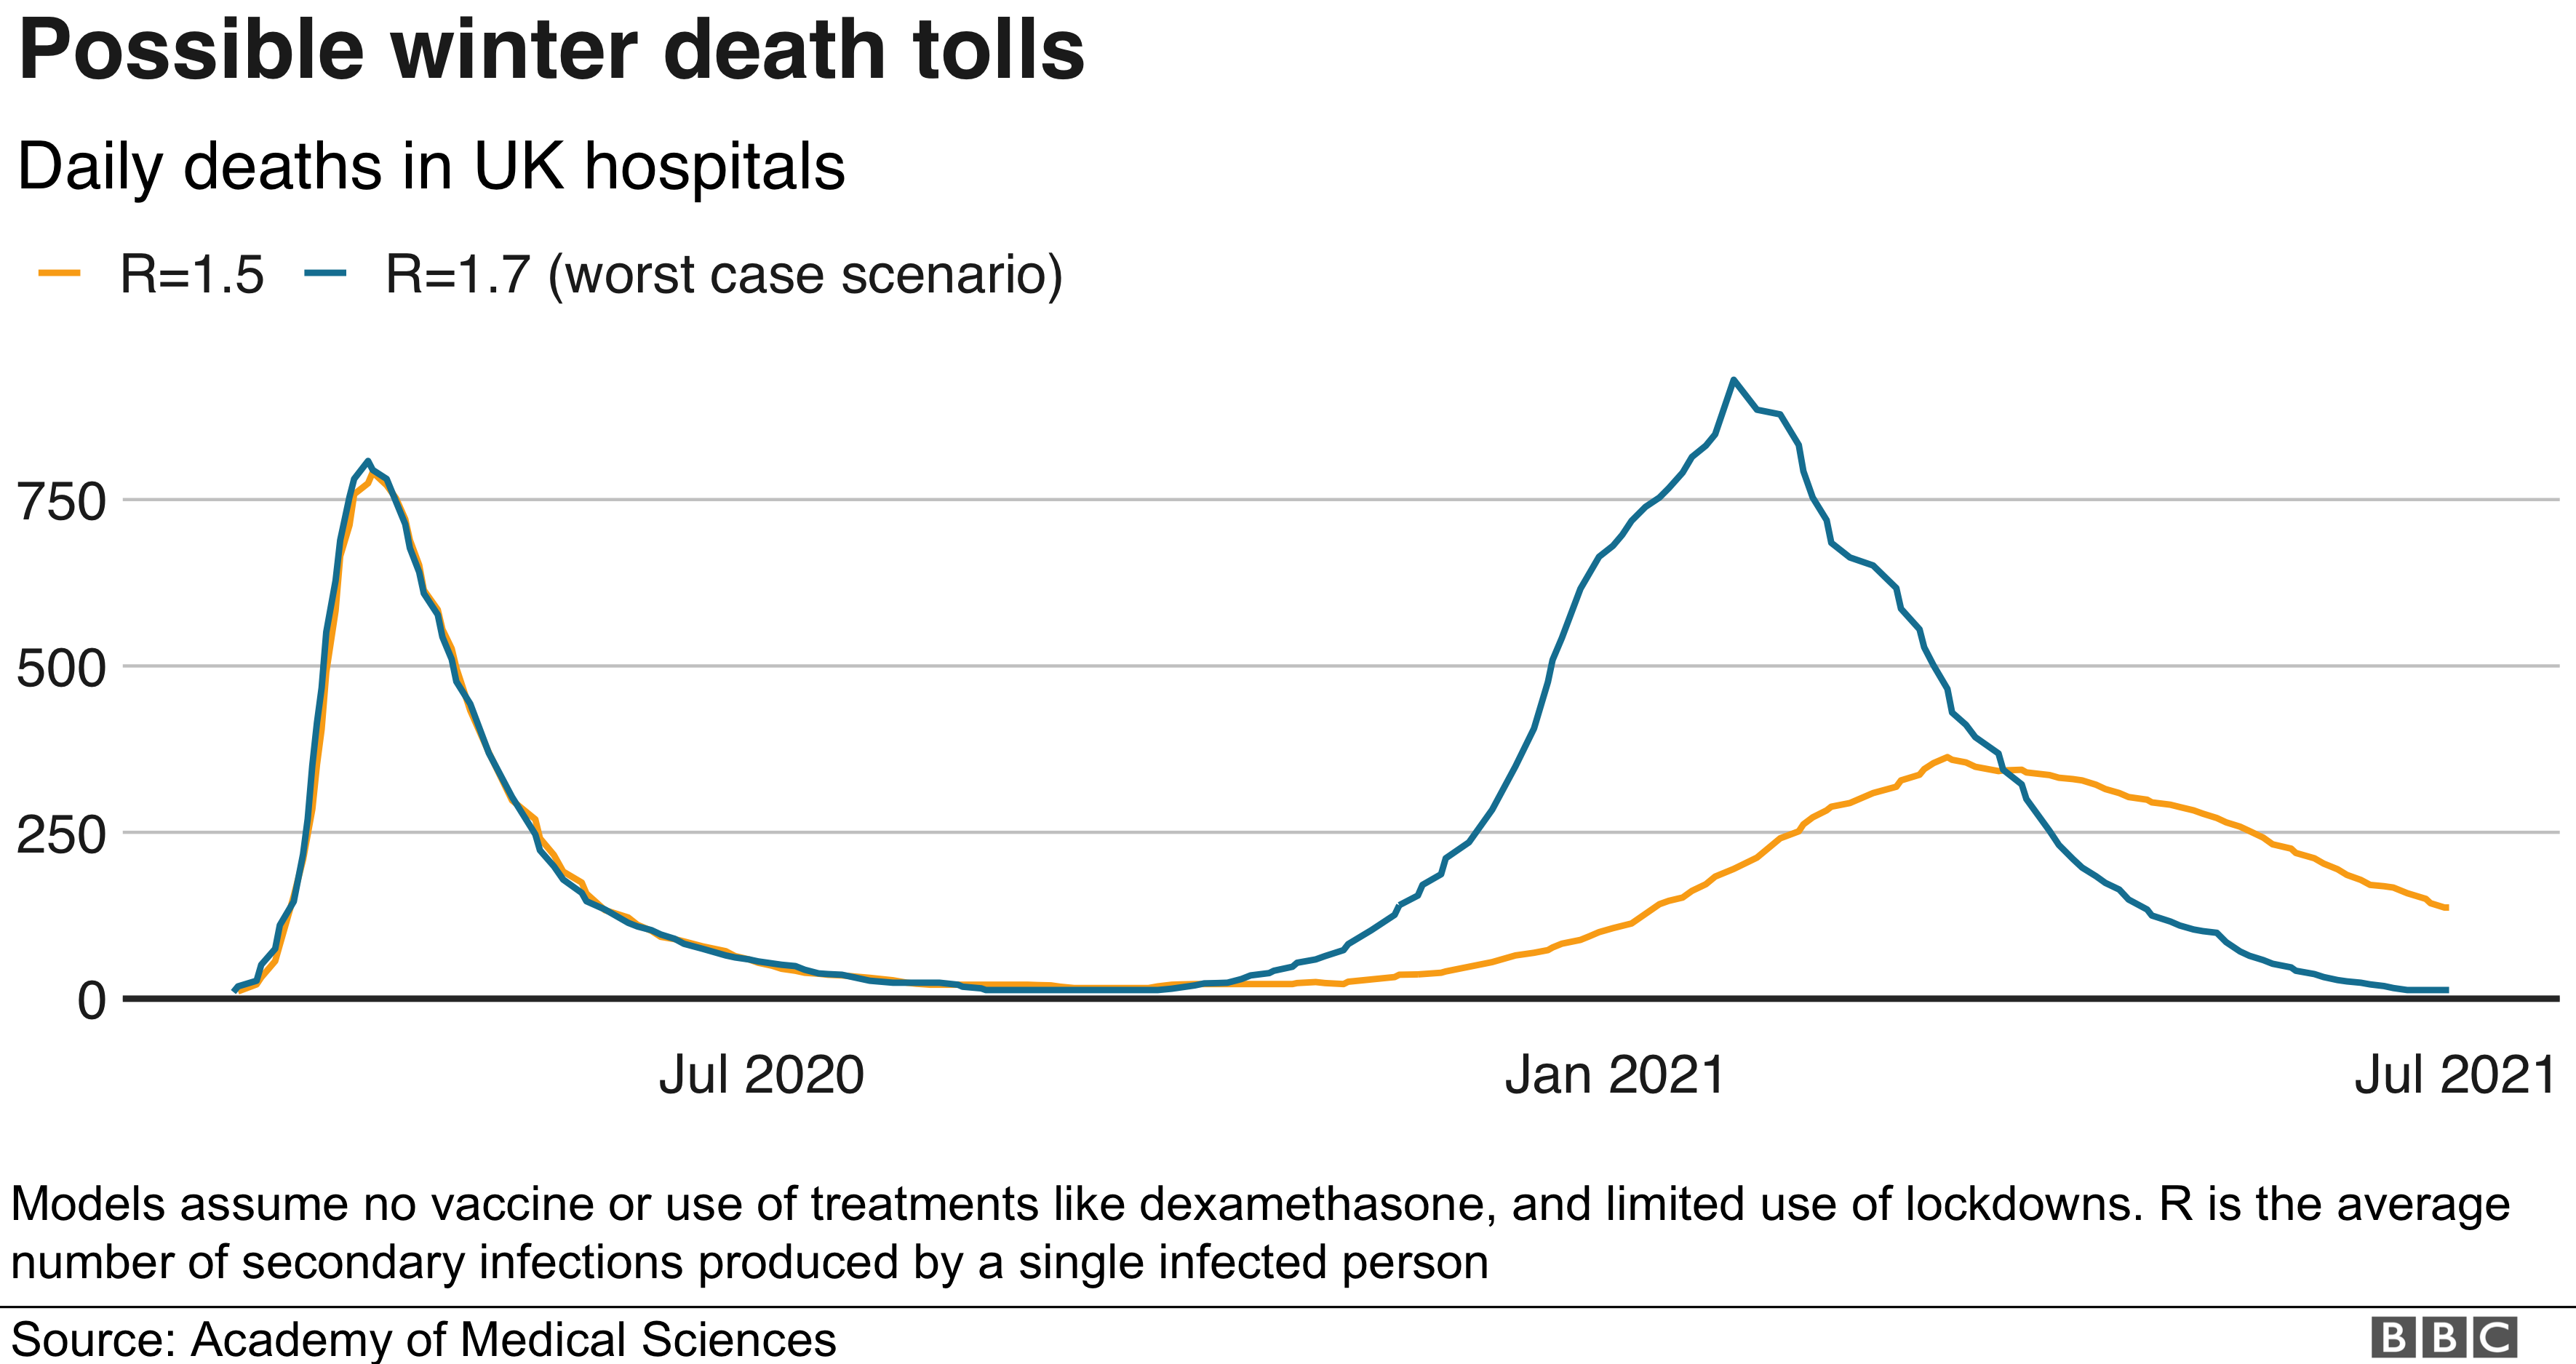 График, показывающий возможное количество смертей в больницах Великобритании зимой